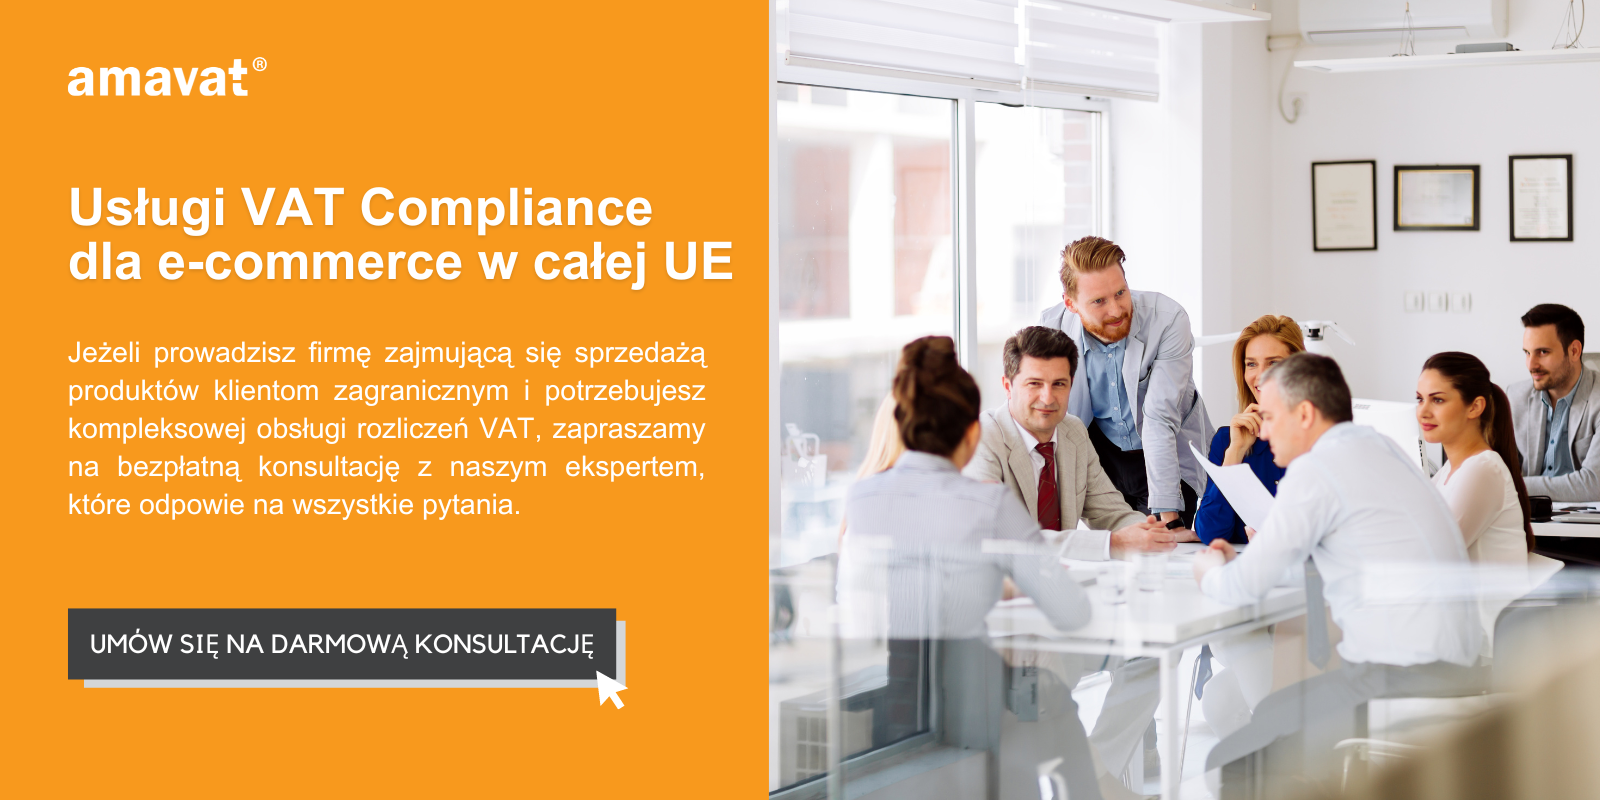 VAT Compliance Services for e-commerce across the EU